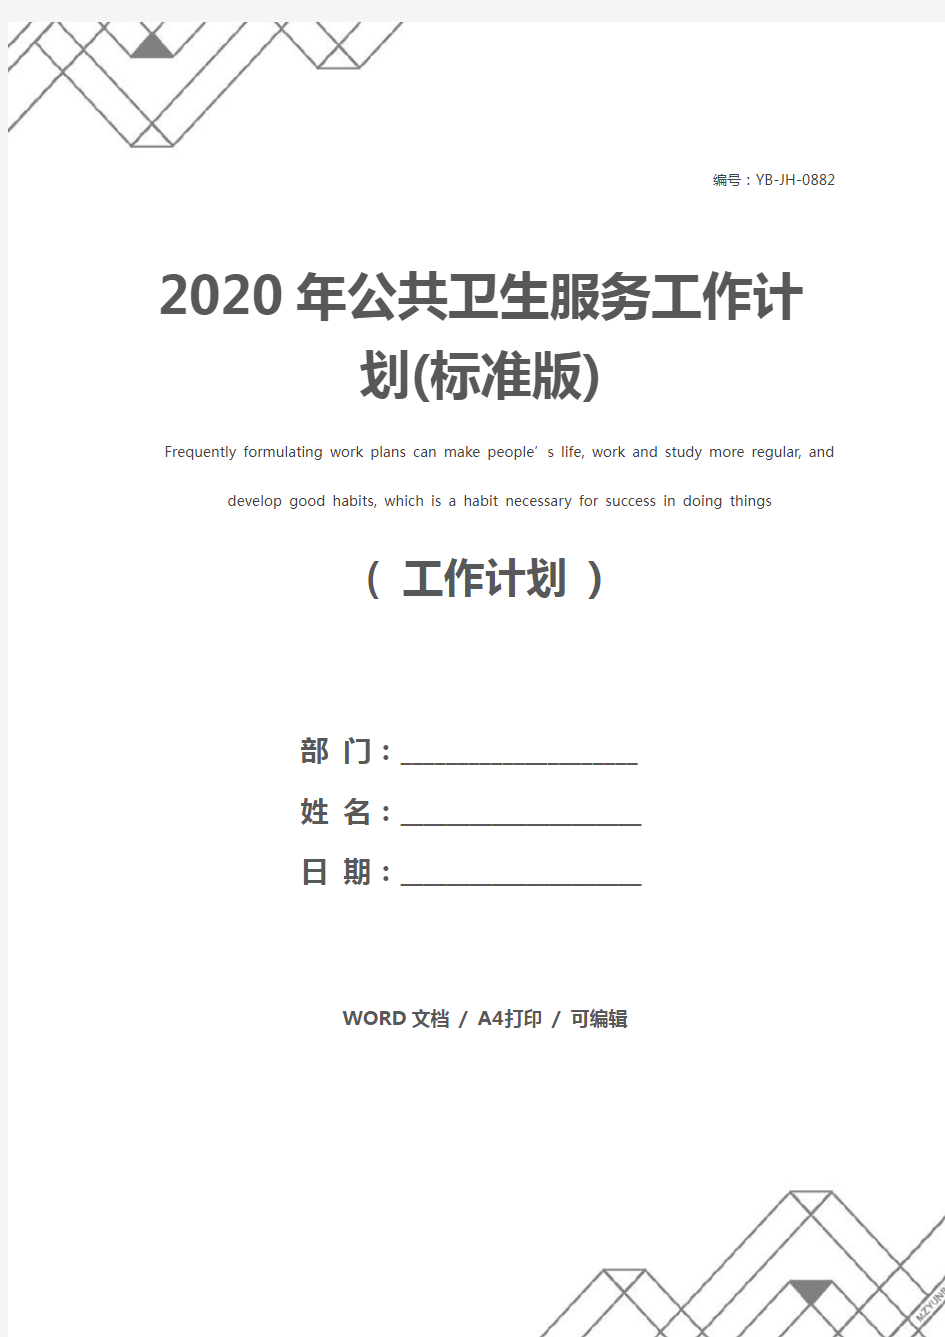 2020年公共卫生服务工作计划(标准版)